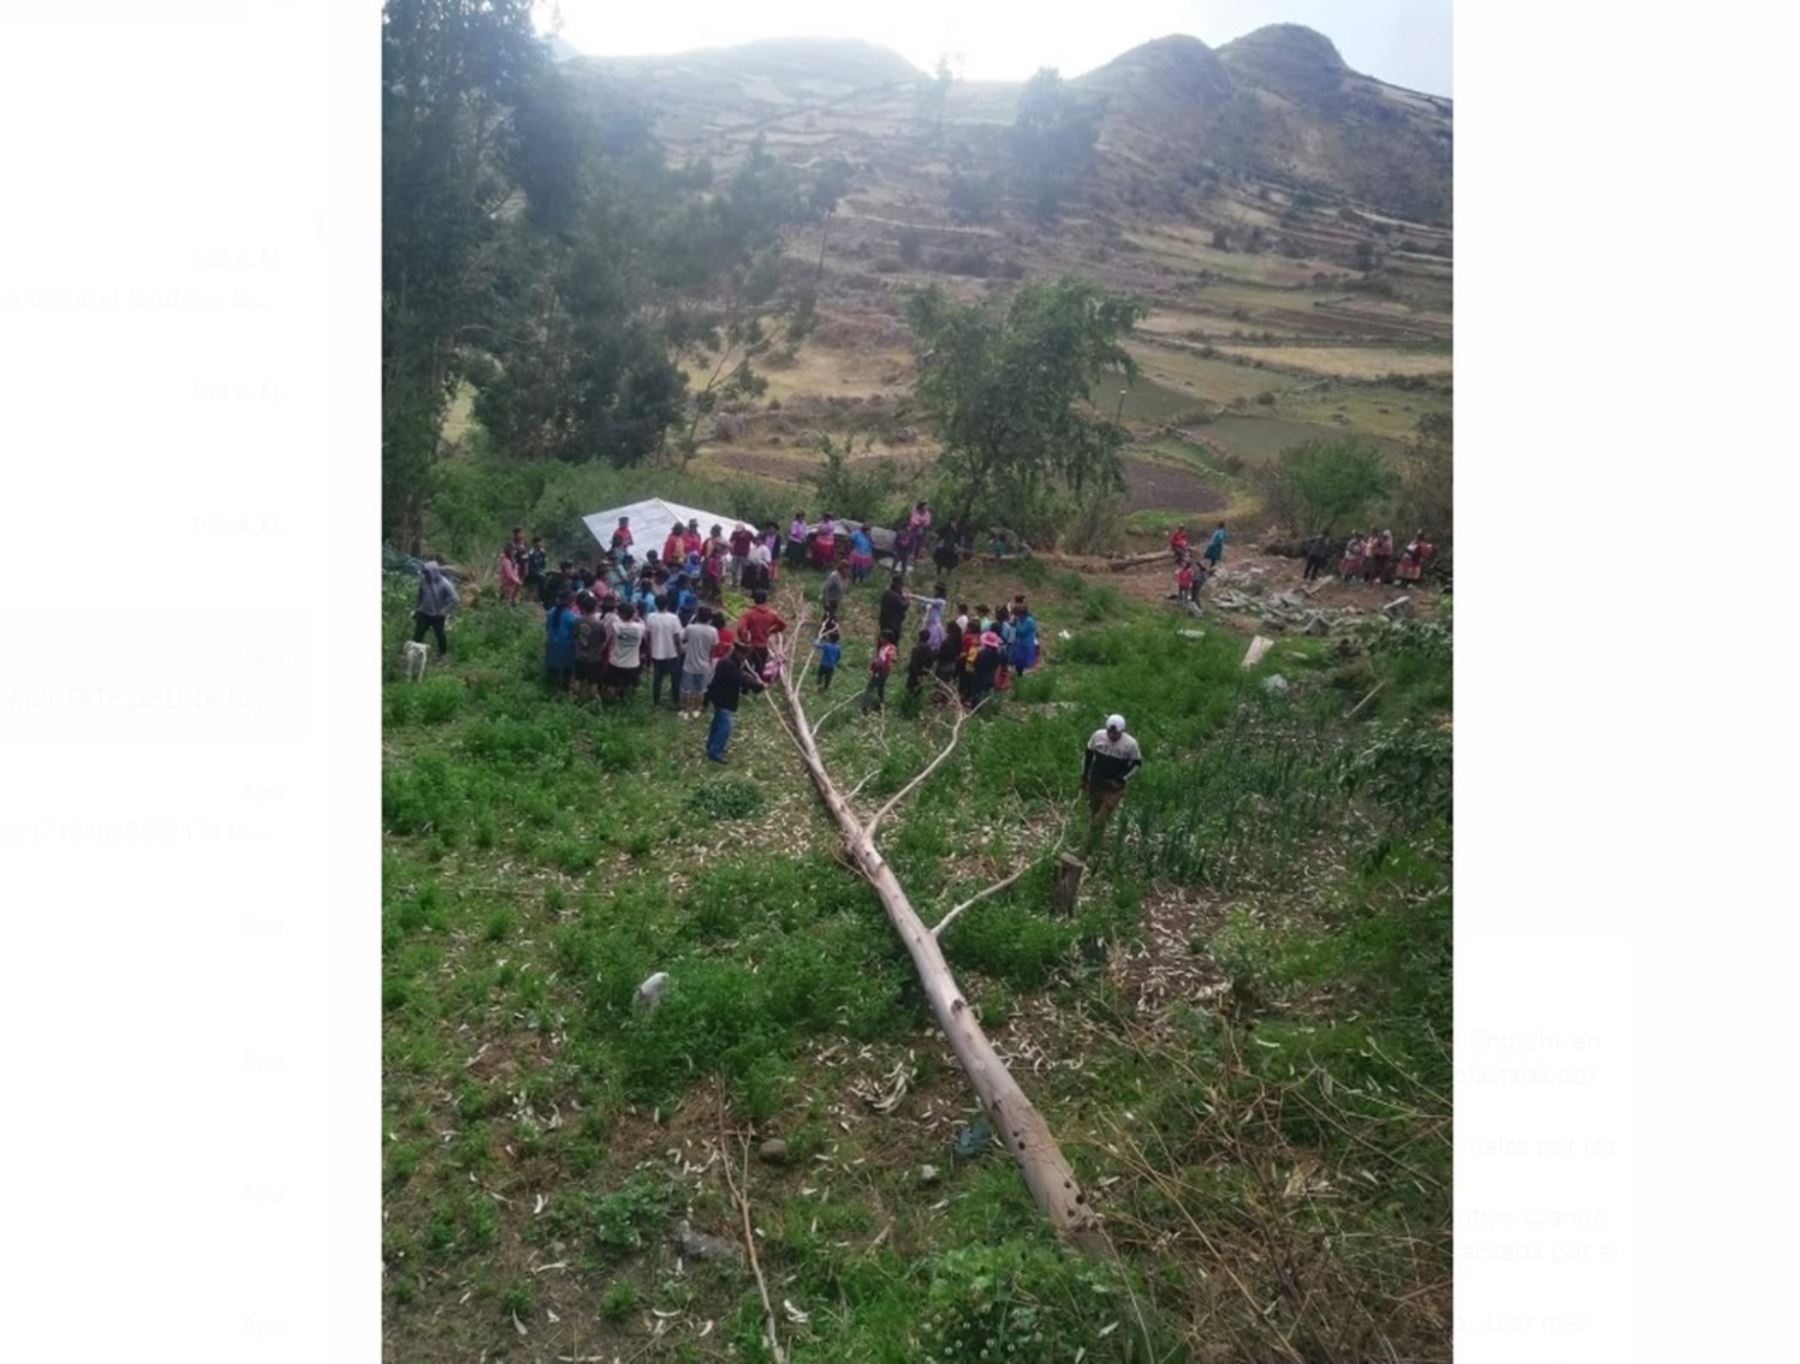 Vientos fuertes provocaron la caída de un árbol. Lamentablemente una mujer falleció a causa de este accidente ocurrido en el distrito de Chuschi, en Ayacucho.